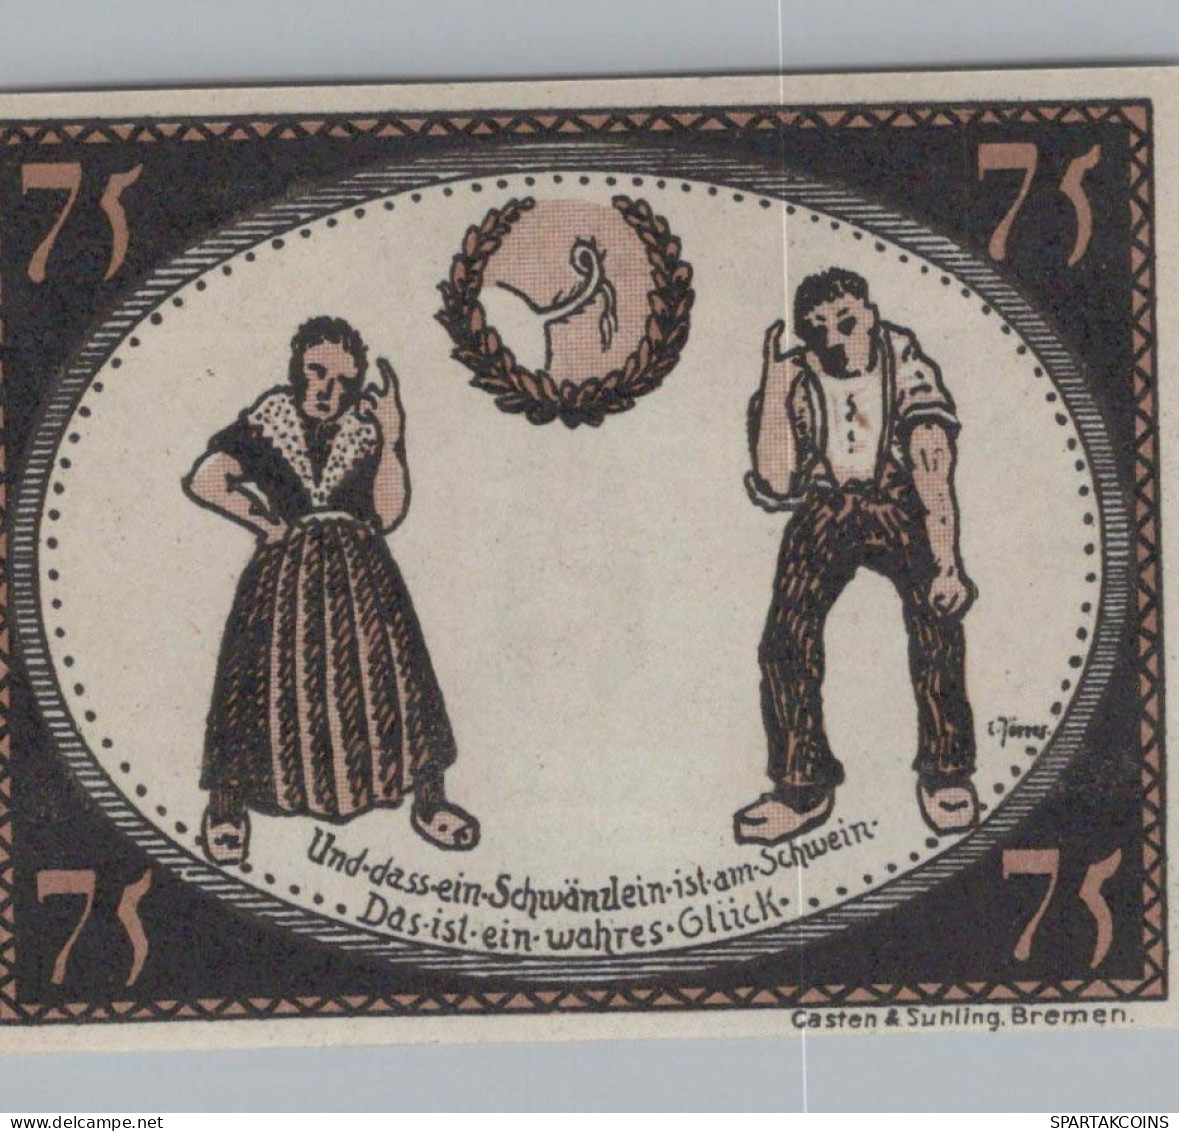 75 PFENNIG 1921 Stadt DIEPHOLZ Hanover UNC DEUTSCHLAND Notgeld Banknote #PA460 - [11] Emissioni Locali